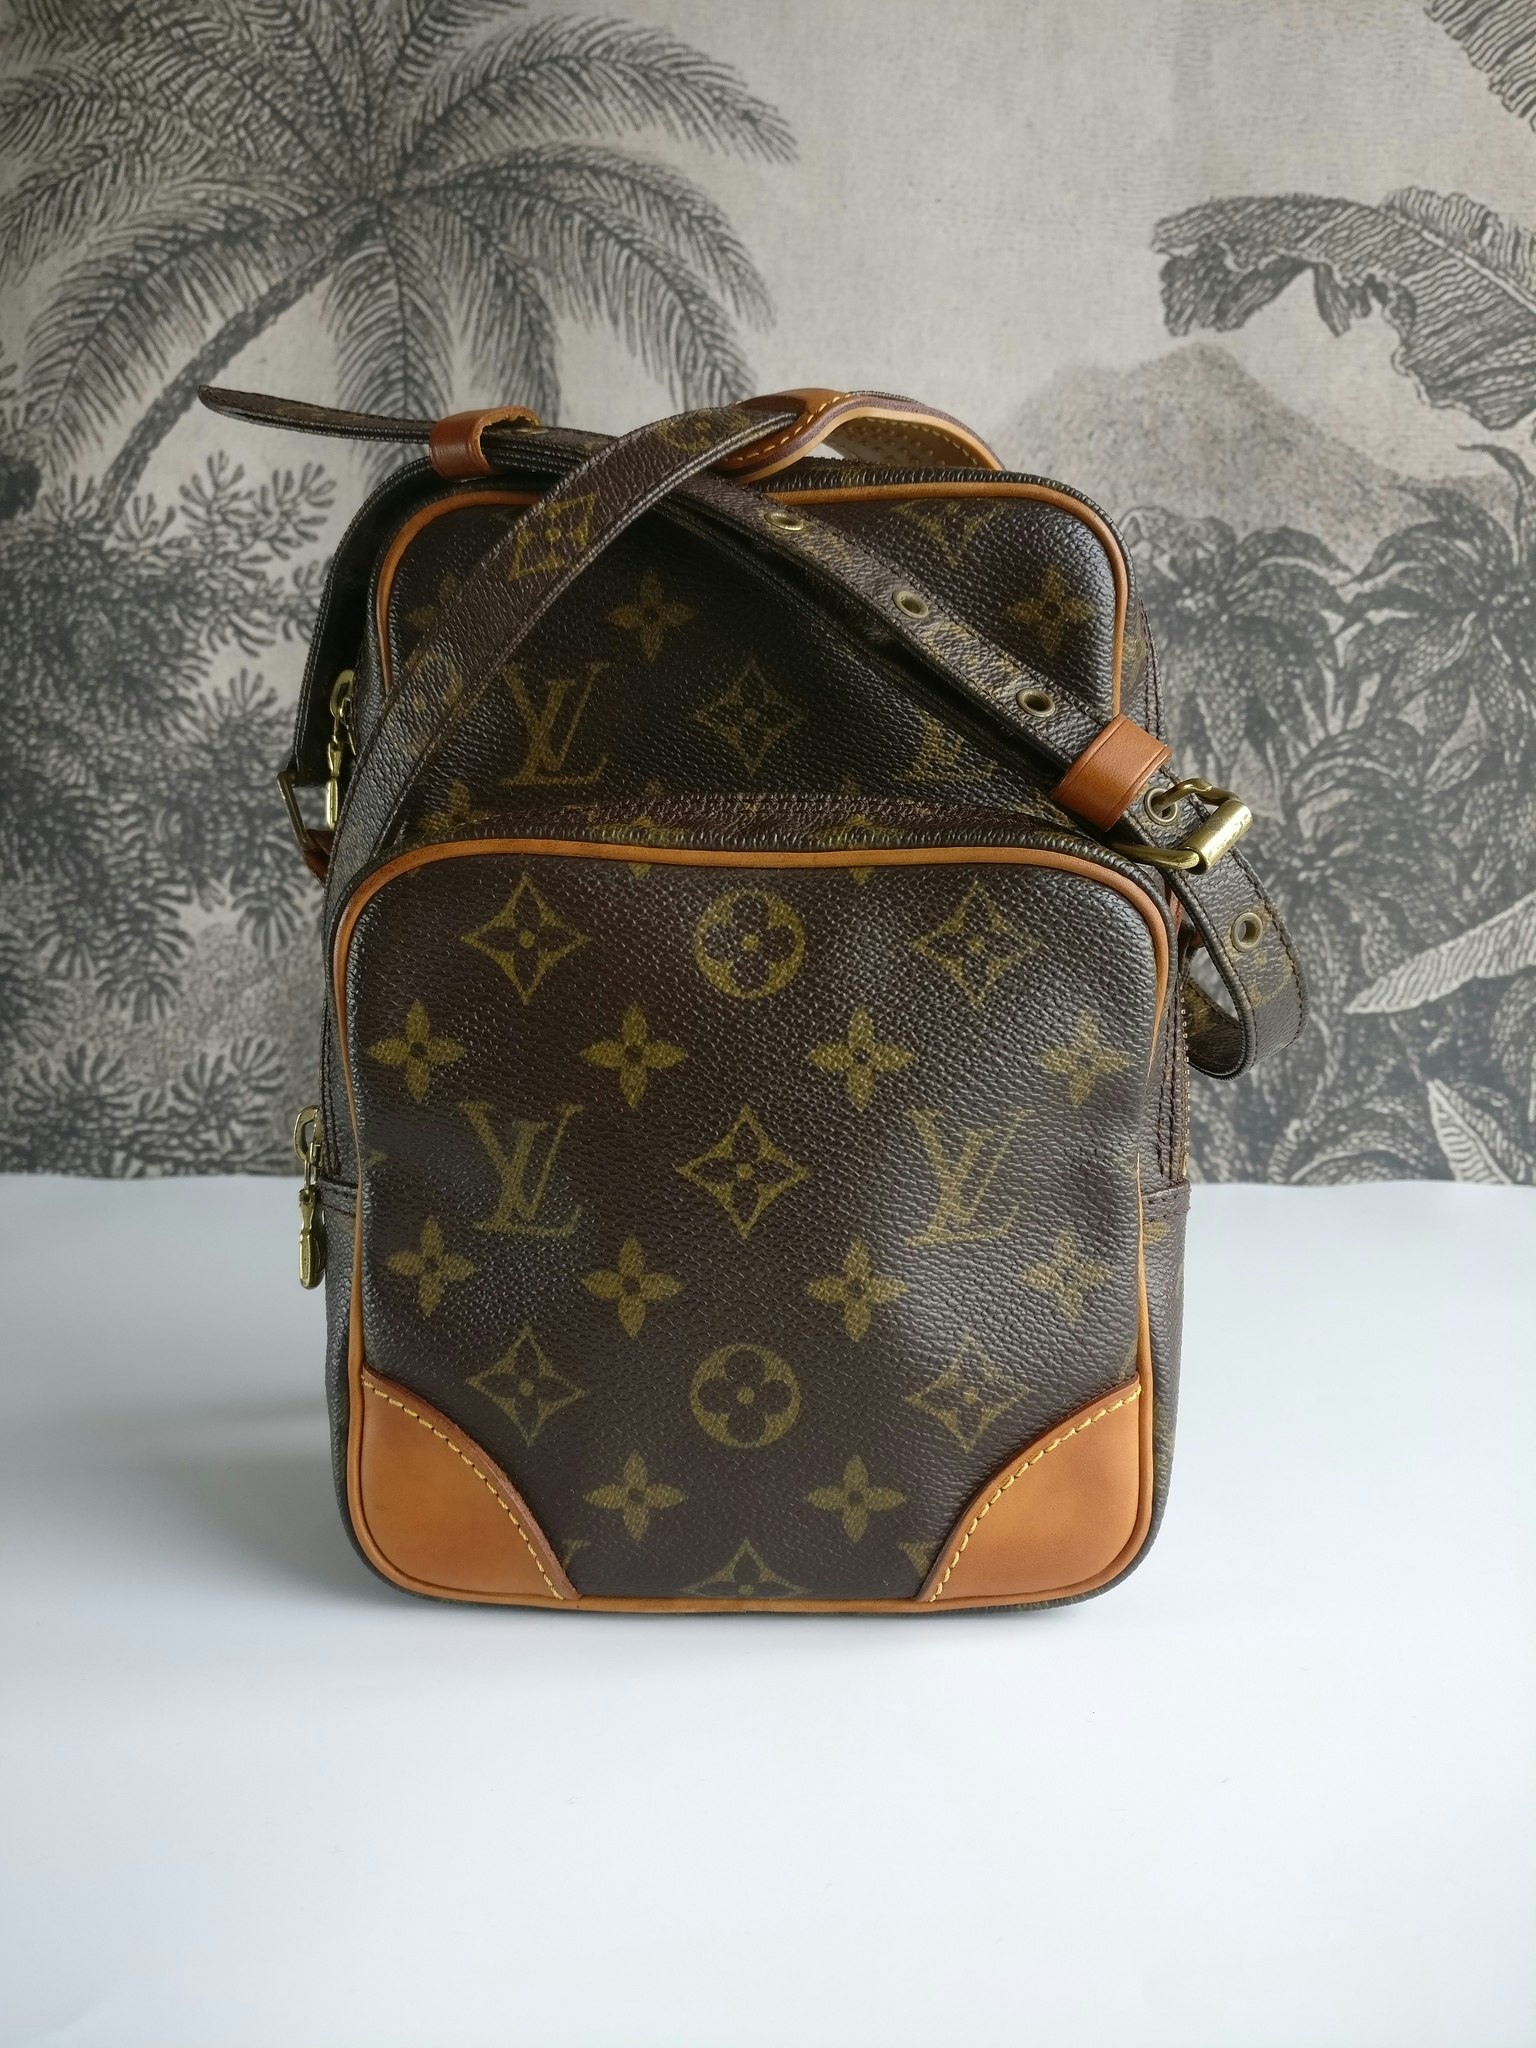 Louis Vuitton Amazon - Good or Bag